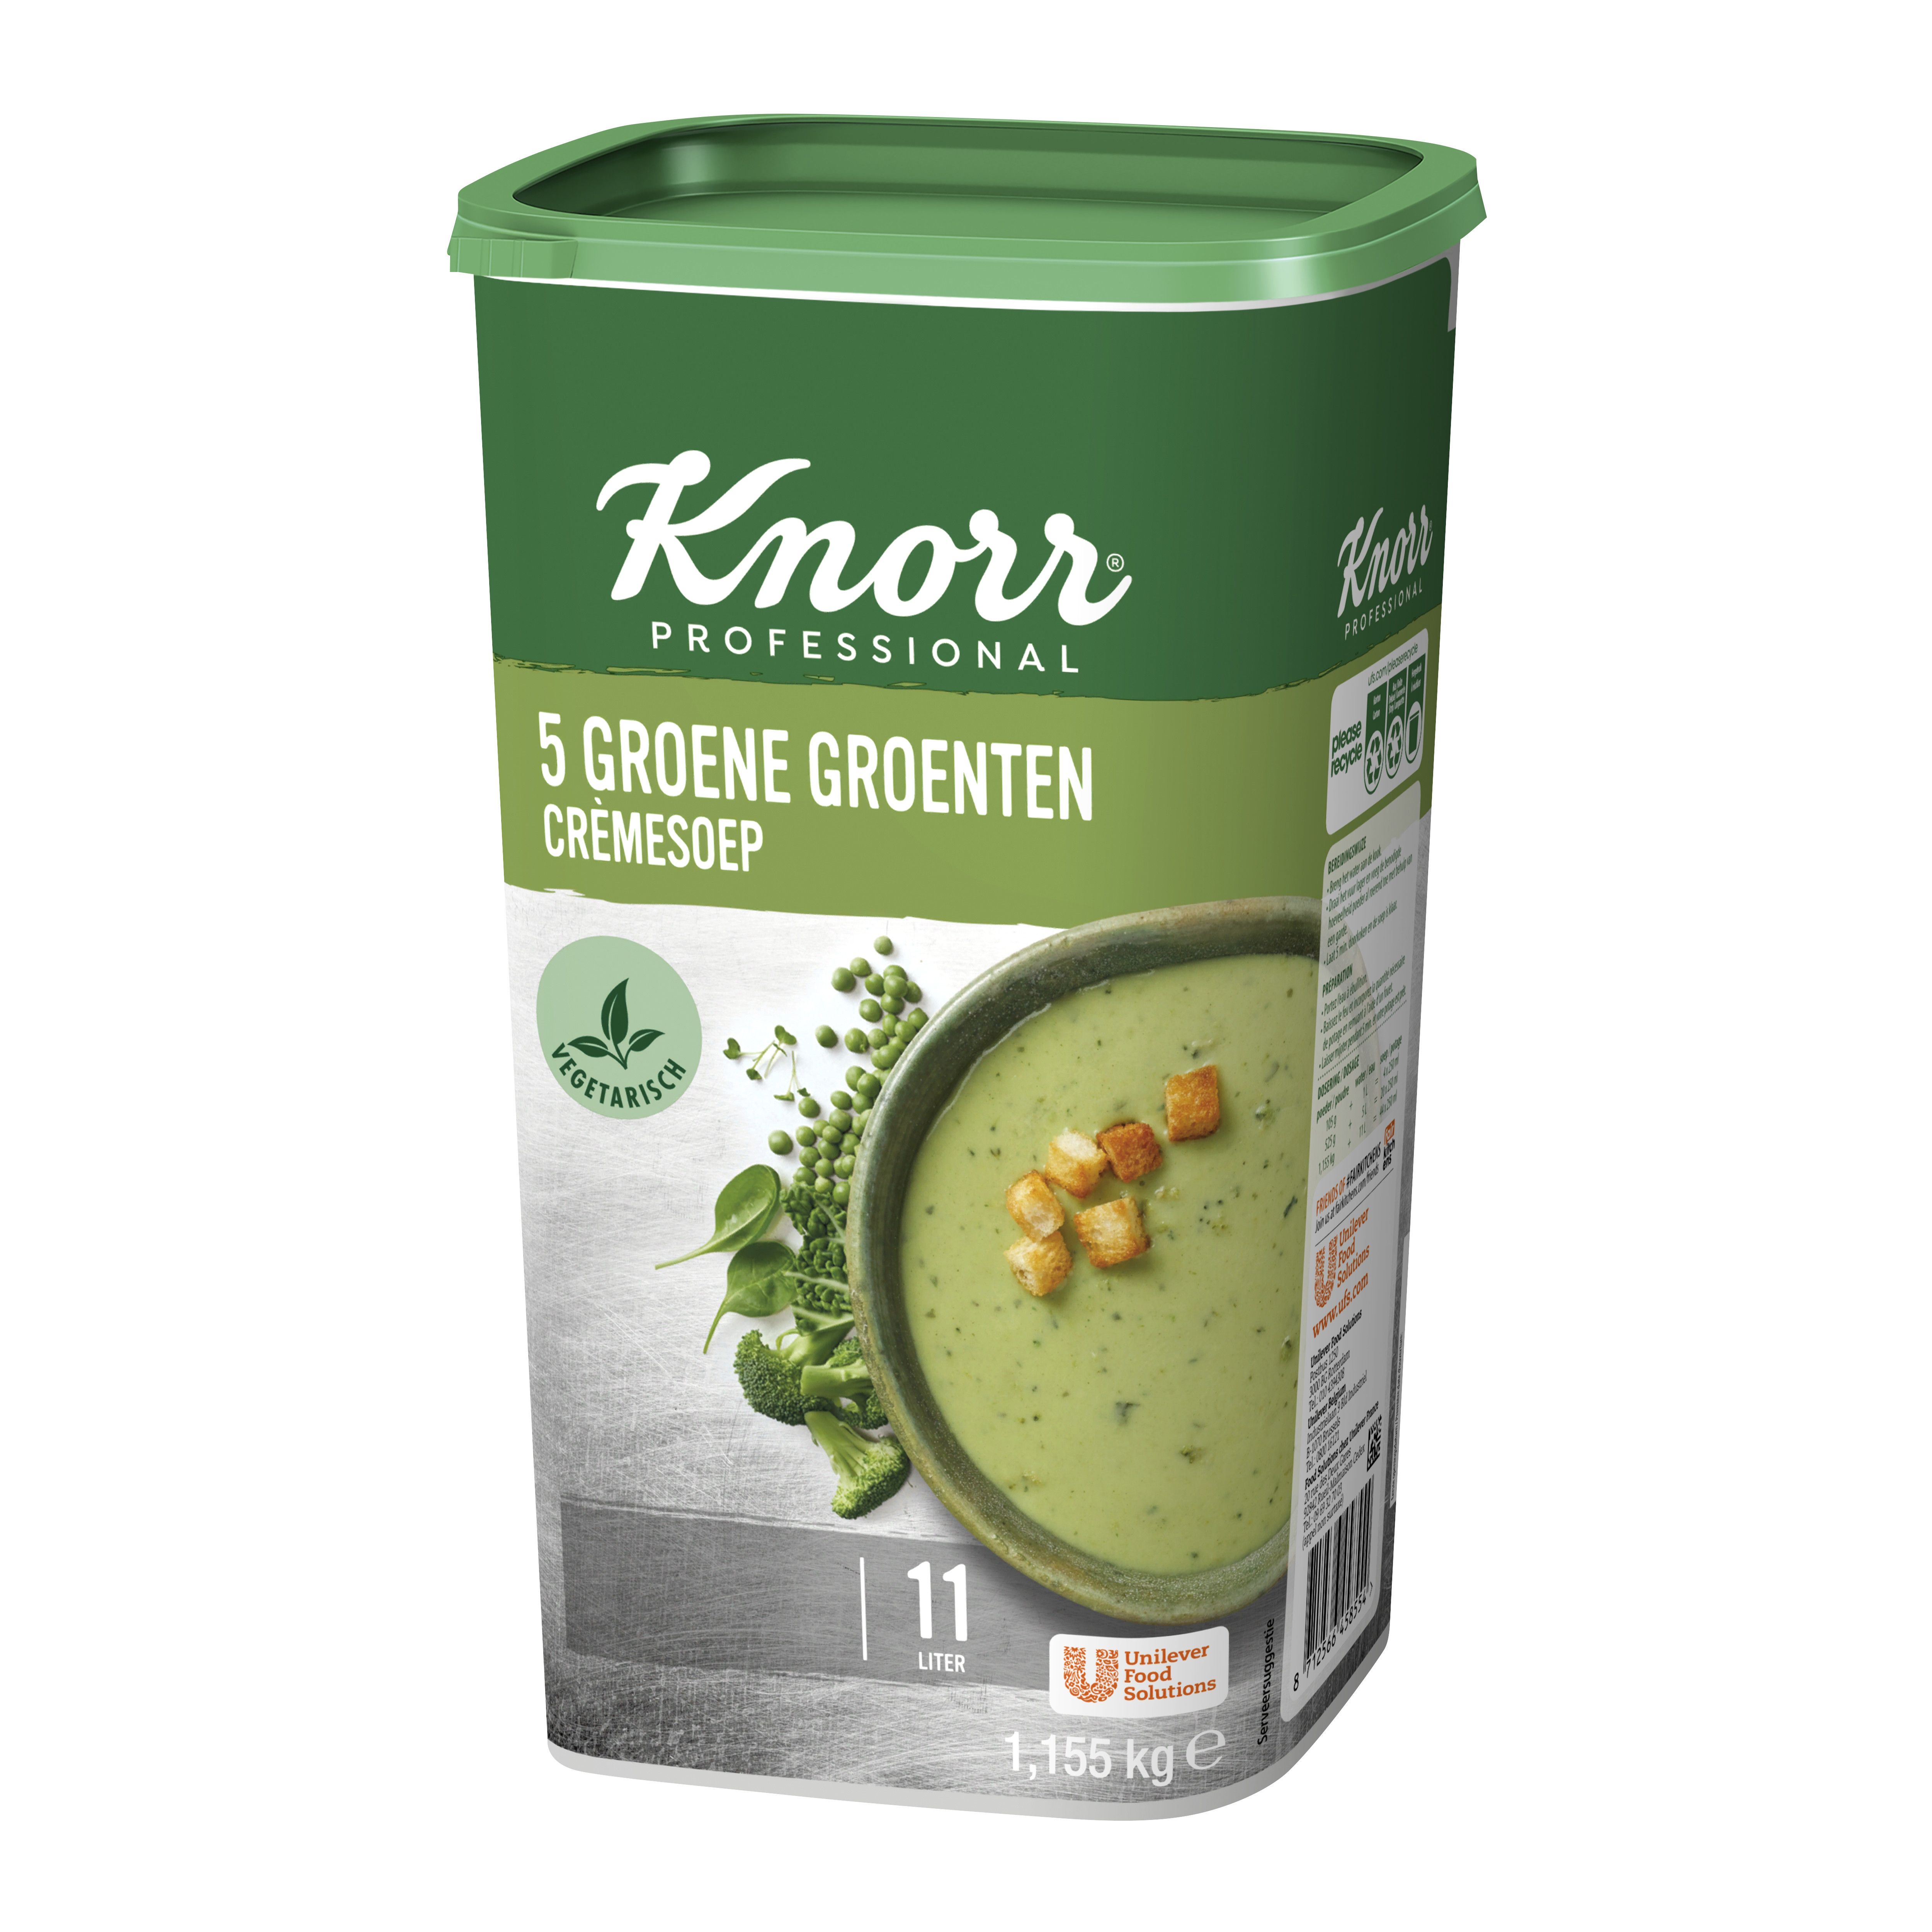 gebied Terughoudendheid Onderverdelen Knorr soep 5 Groene Groenten Creme 1.155kg Professional Online Soepen Kopen  - Nevejan